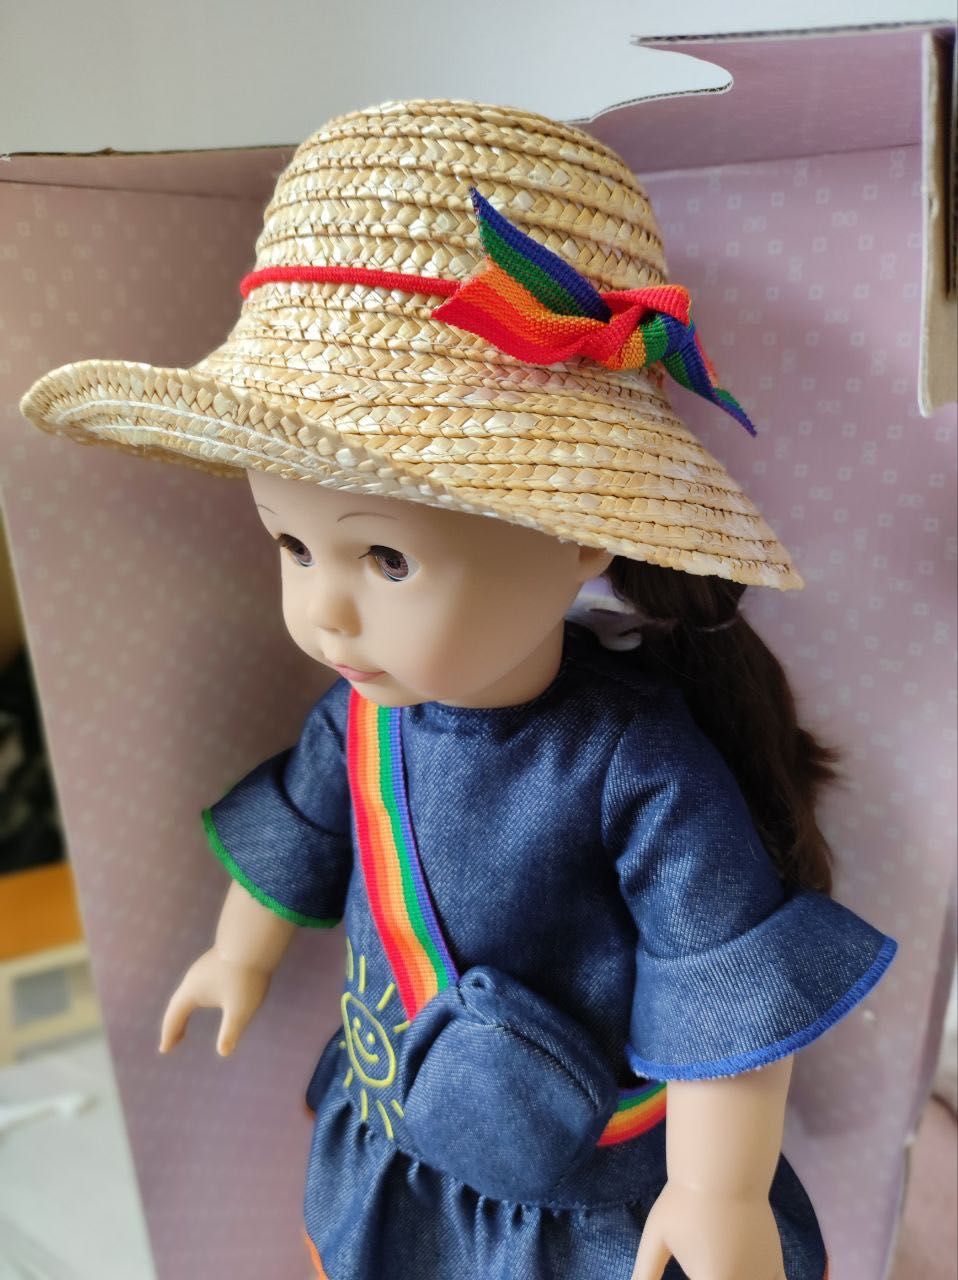 Кукла Gotz/Готц Elizabeth Rainbow, 48 см, 2290327